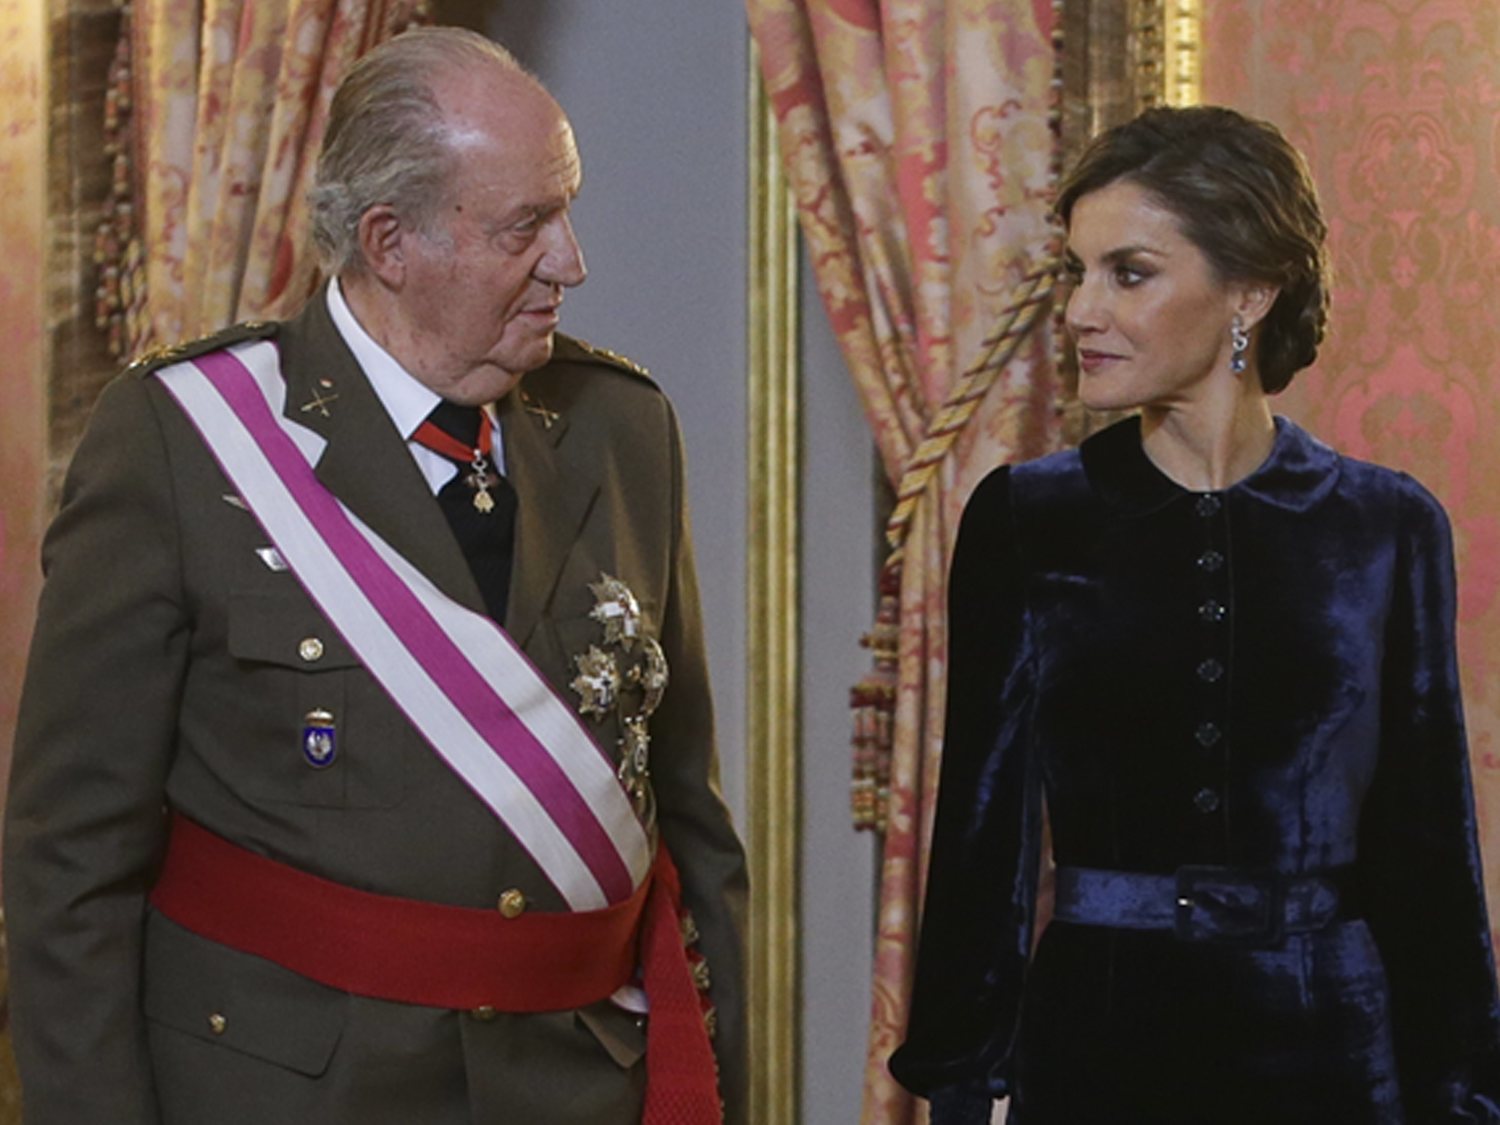 La reina Letizia carga contra el rey Juan Carlos y le acusa de "cargarse la monarquía"